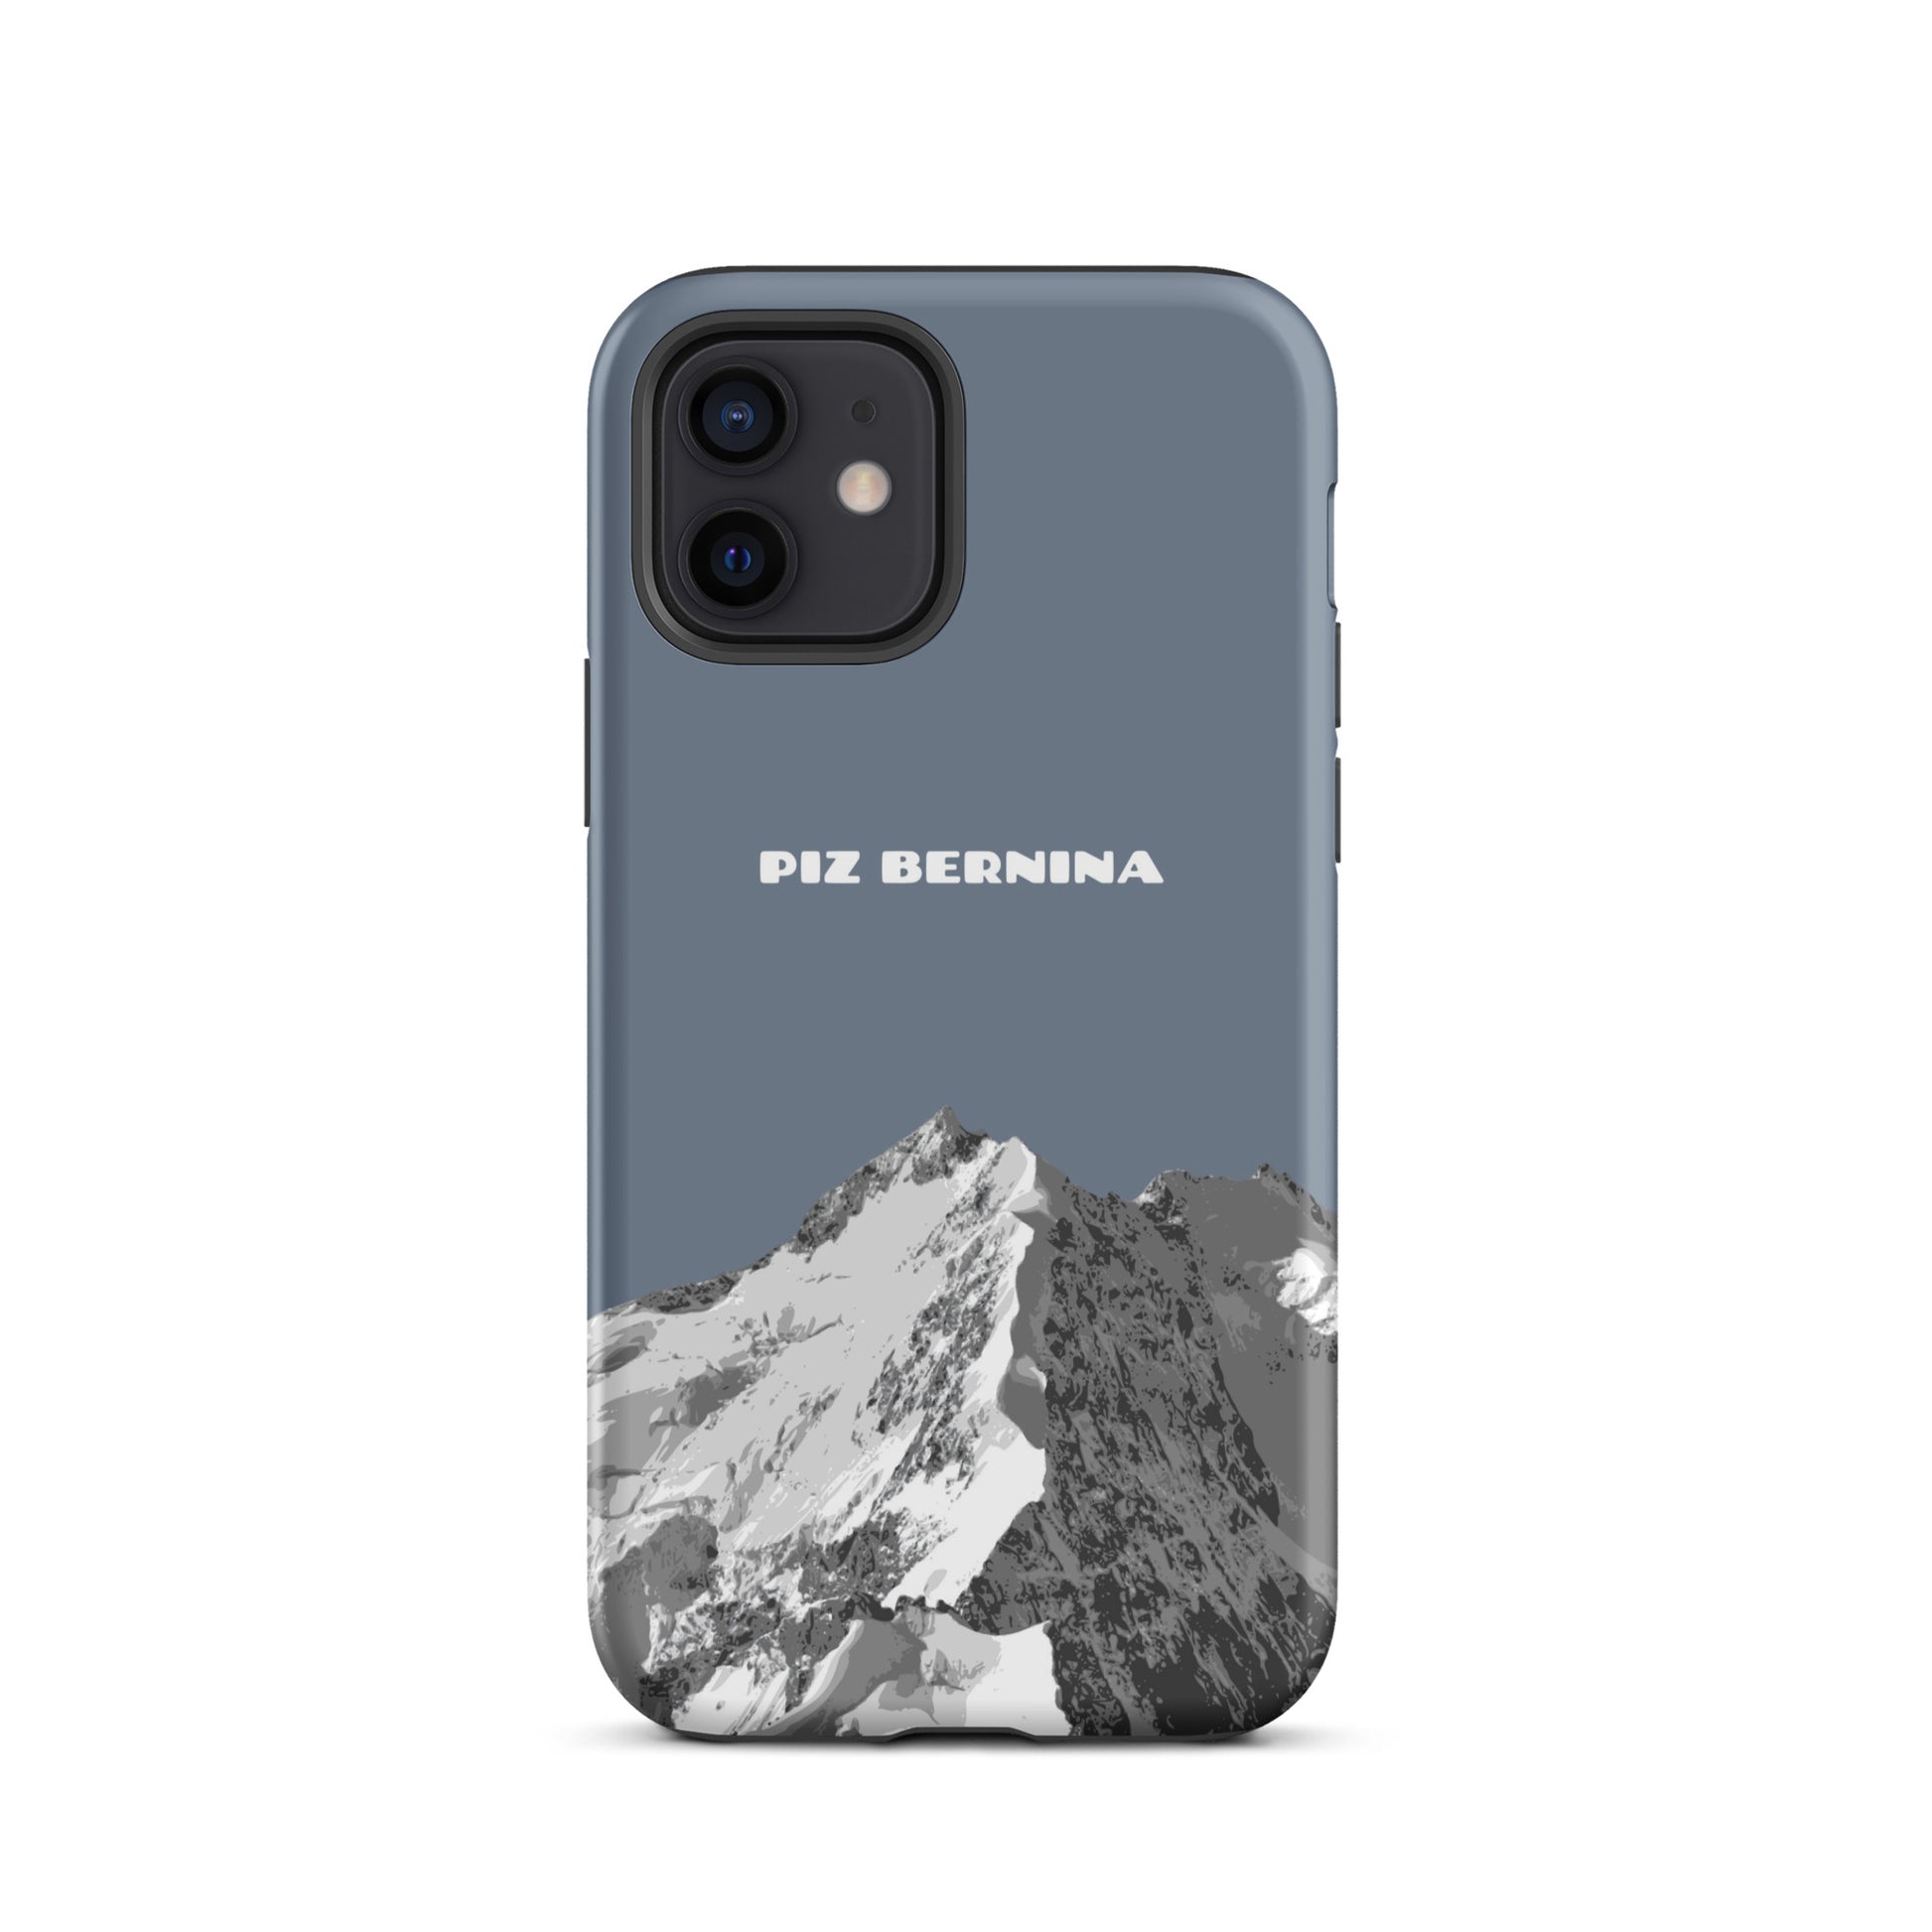 Hülle für das iPhone 12 von Apple in der Farbe Schiefergrau, dass den Piz Bernina in Graubünden zeigt.